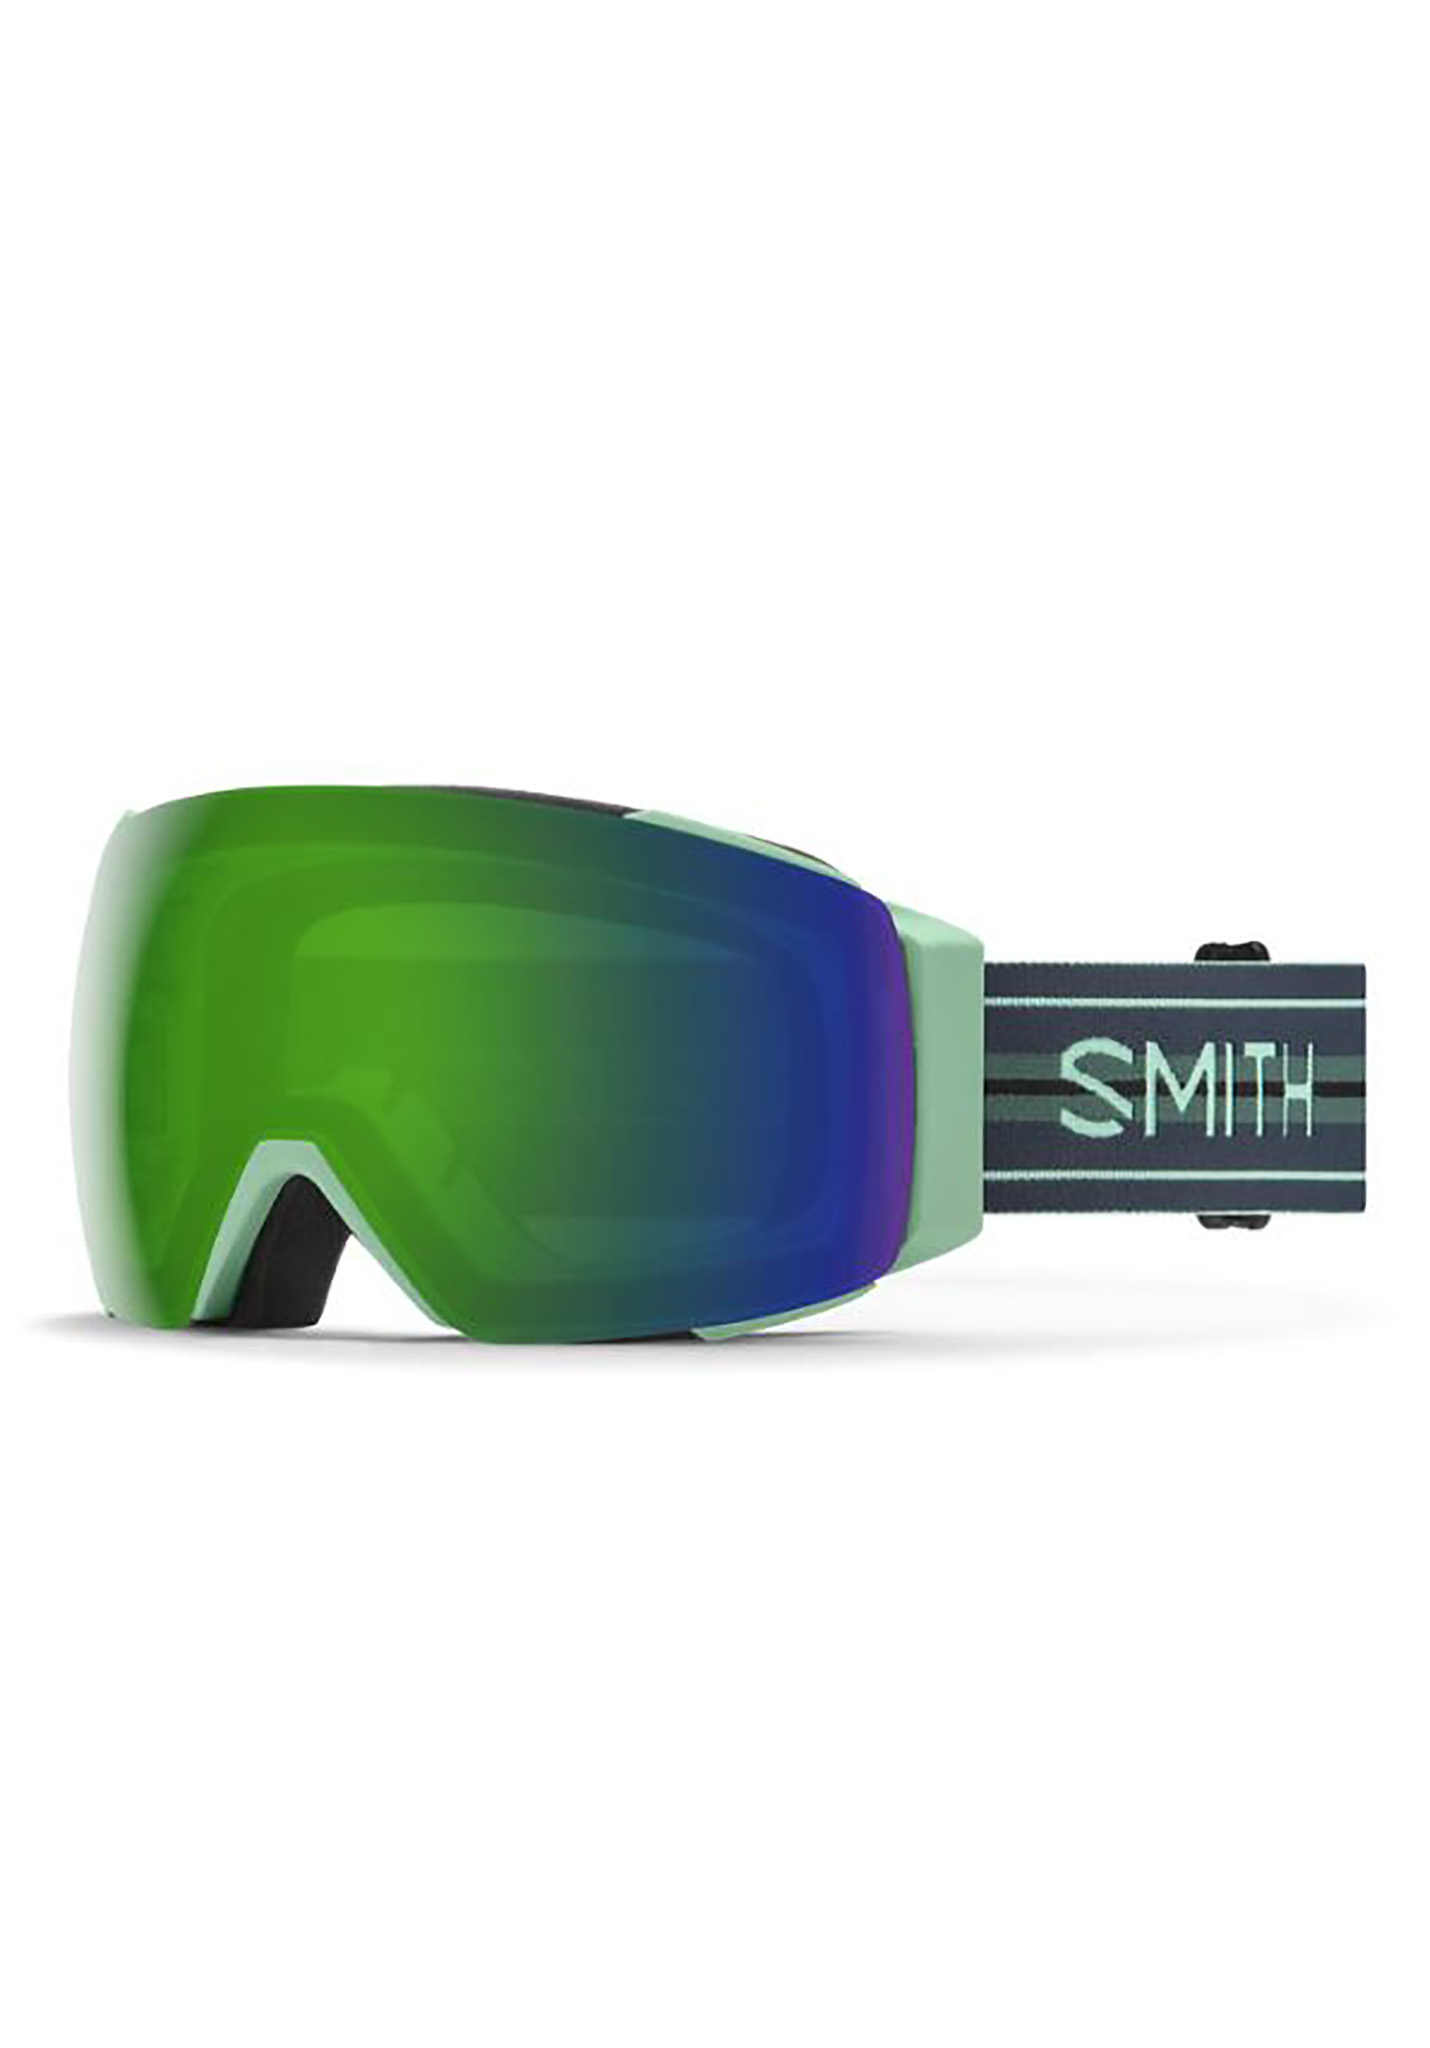 Smith I/O Mag Snowboardbrillen bermudastreifen/sonnengrüner spiegel One Size